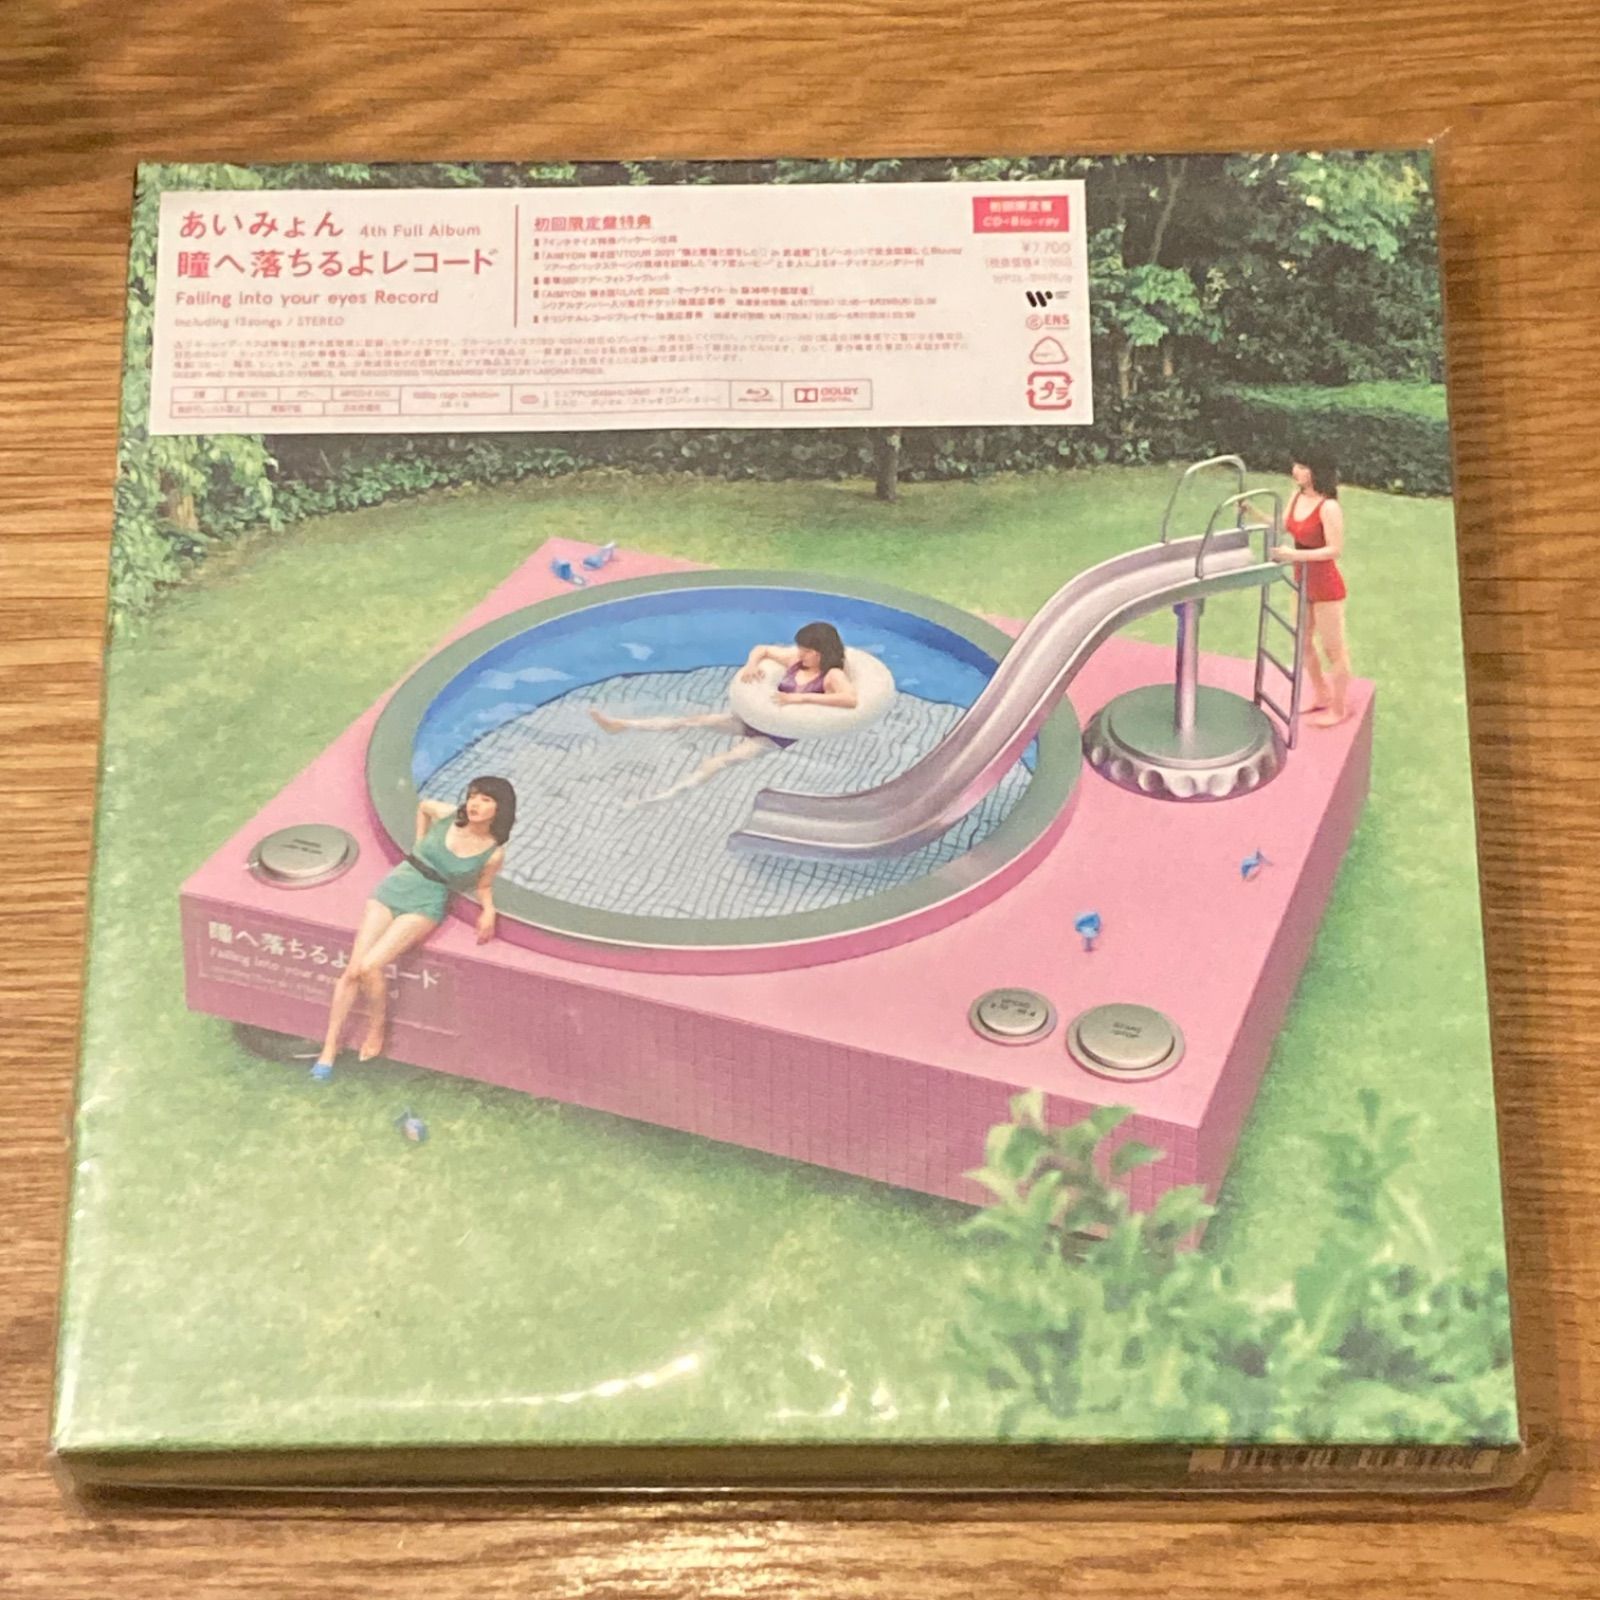 あいみょん/ 瞳へ落ちるよレコード 初回限定盤【CD+Blu-ray